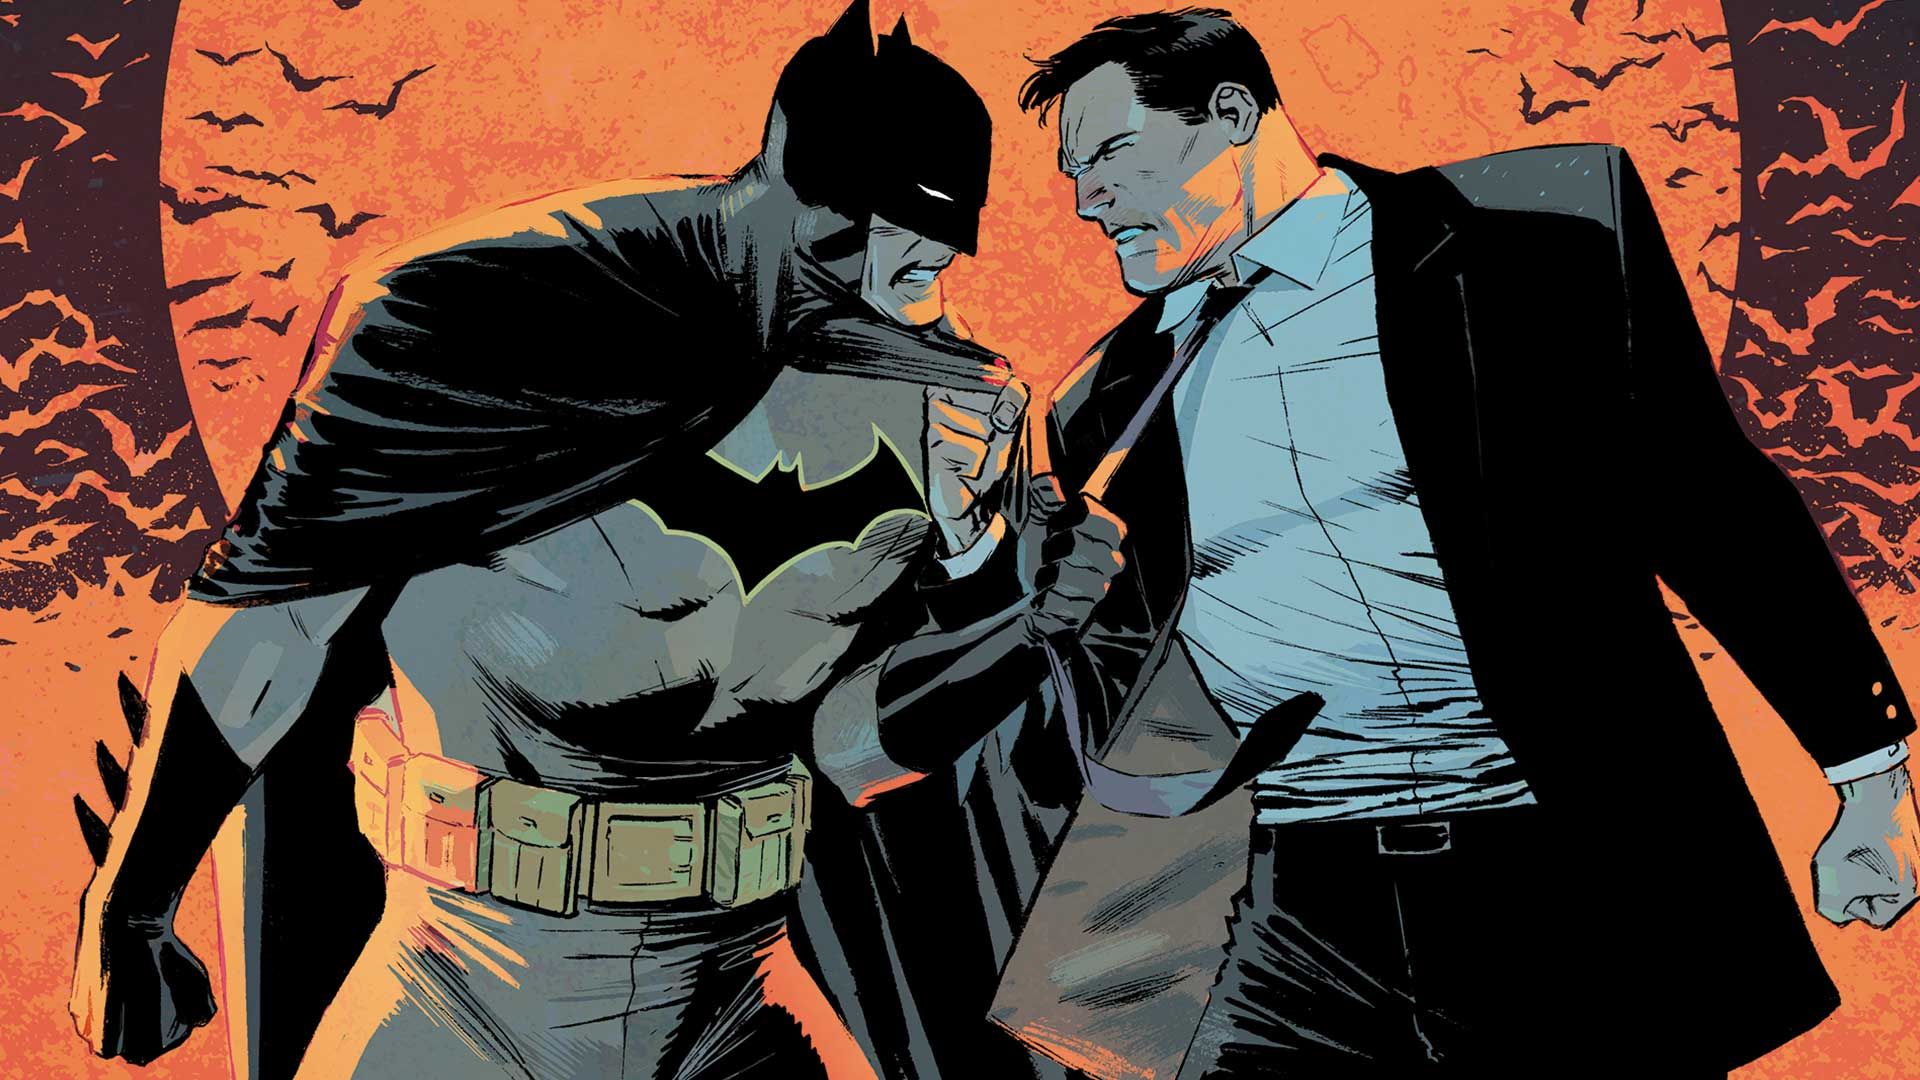 plan de estudios Presunción chocar Batman: ¿Qué opinan los psiquiatras de Batman?